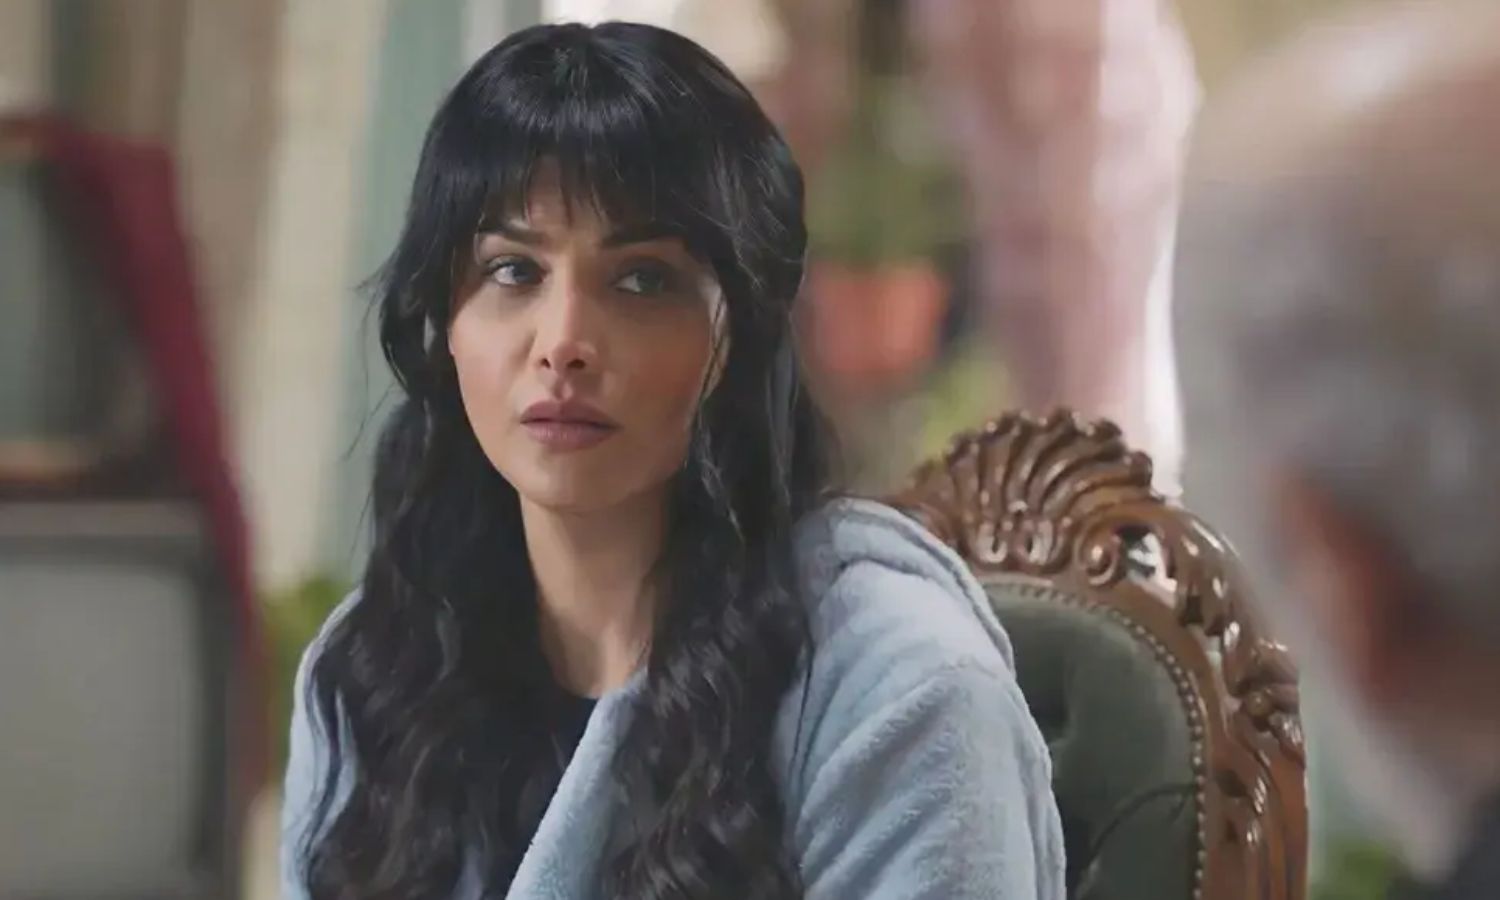 الممثلة السورية قمر خلف في أحد مشاهد مسلسل “خريف عمر”